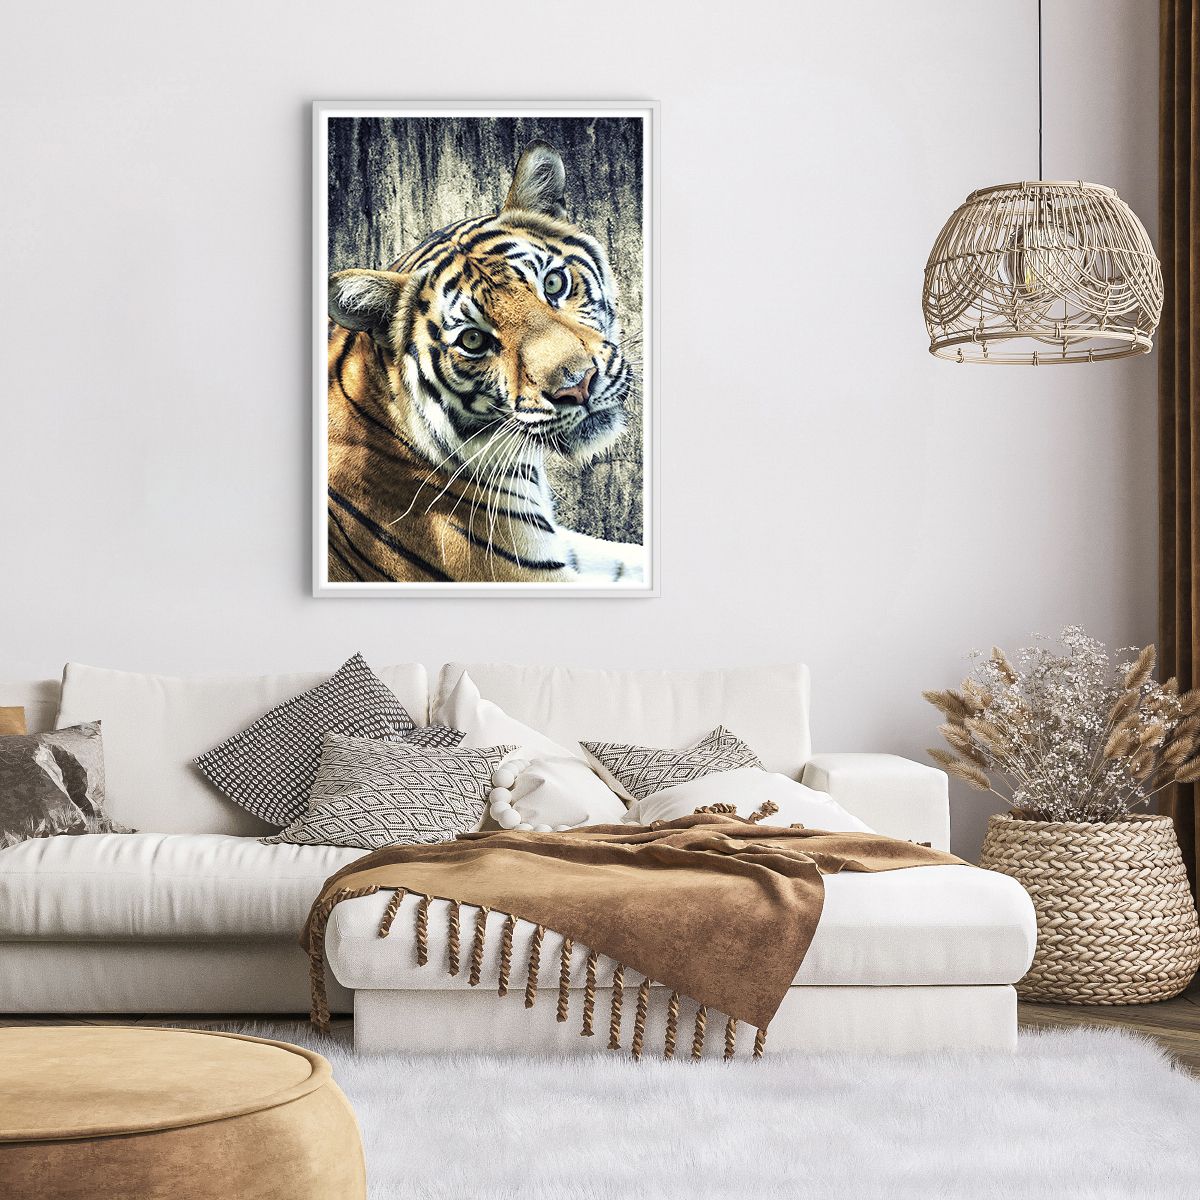 Affiche dans un cadre blanc Animaux, Affiche dans un cadre blanc Tigre, Affiche dans un cadre blanc Afrique, Affiche dans un cadre blanc Animal Sauvage, Affiche dans un cadre blanc Inde